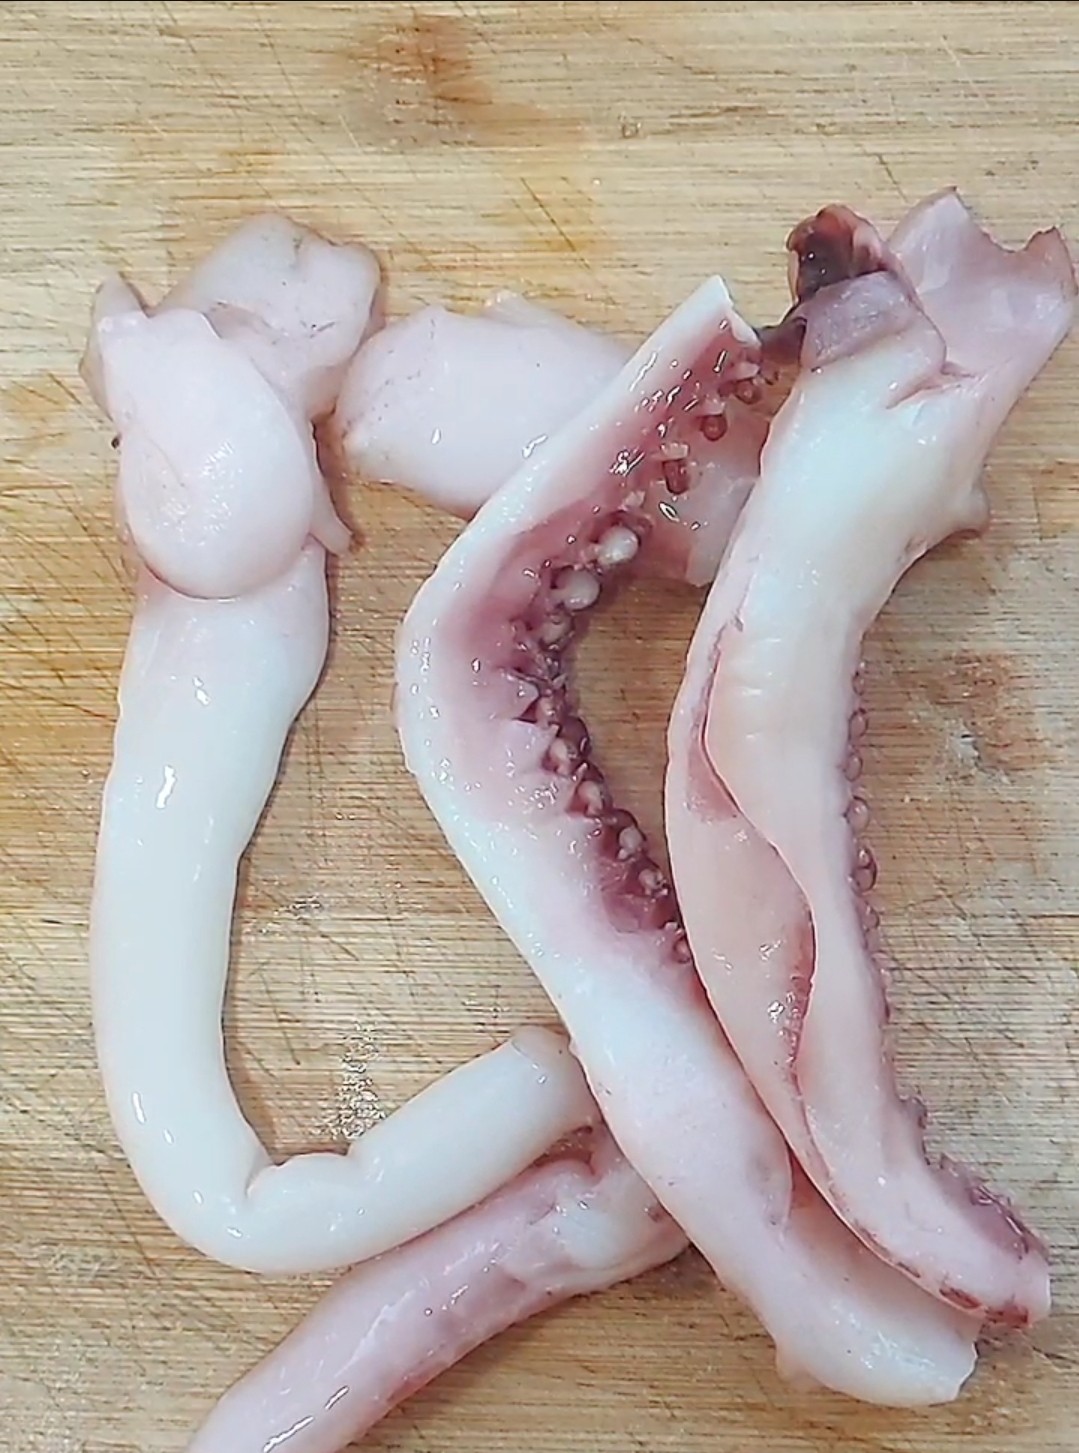 Octopus Dumplings recipe